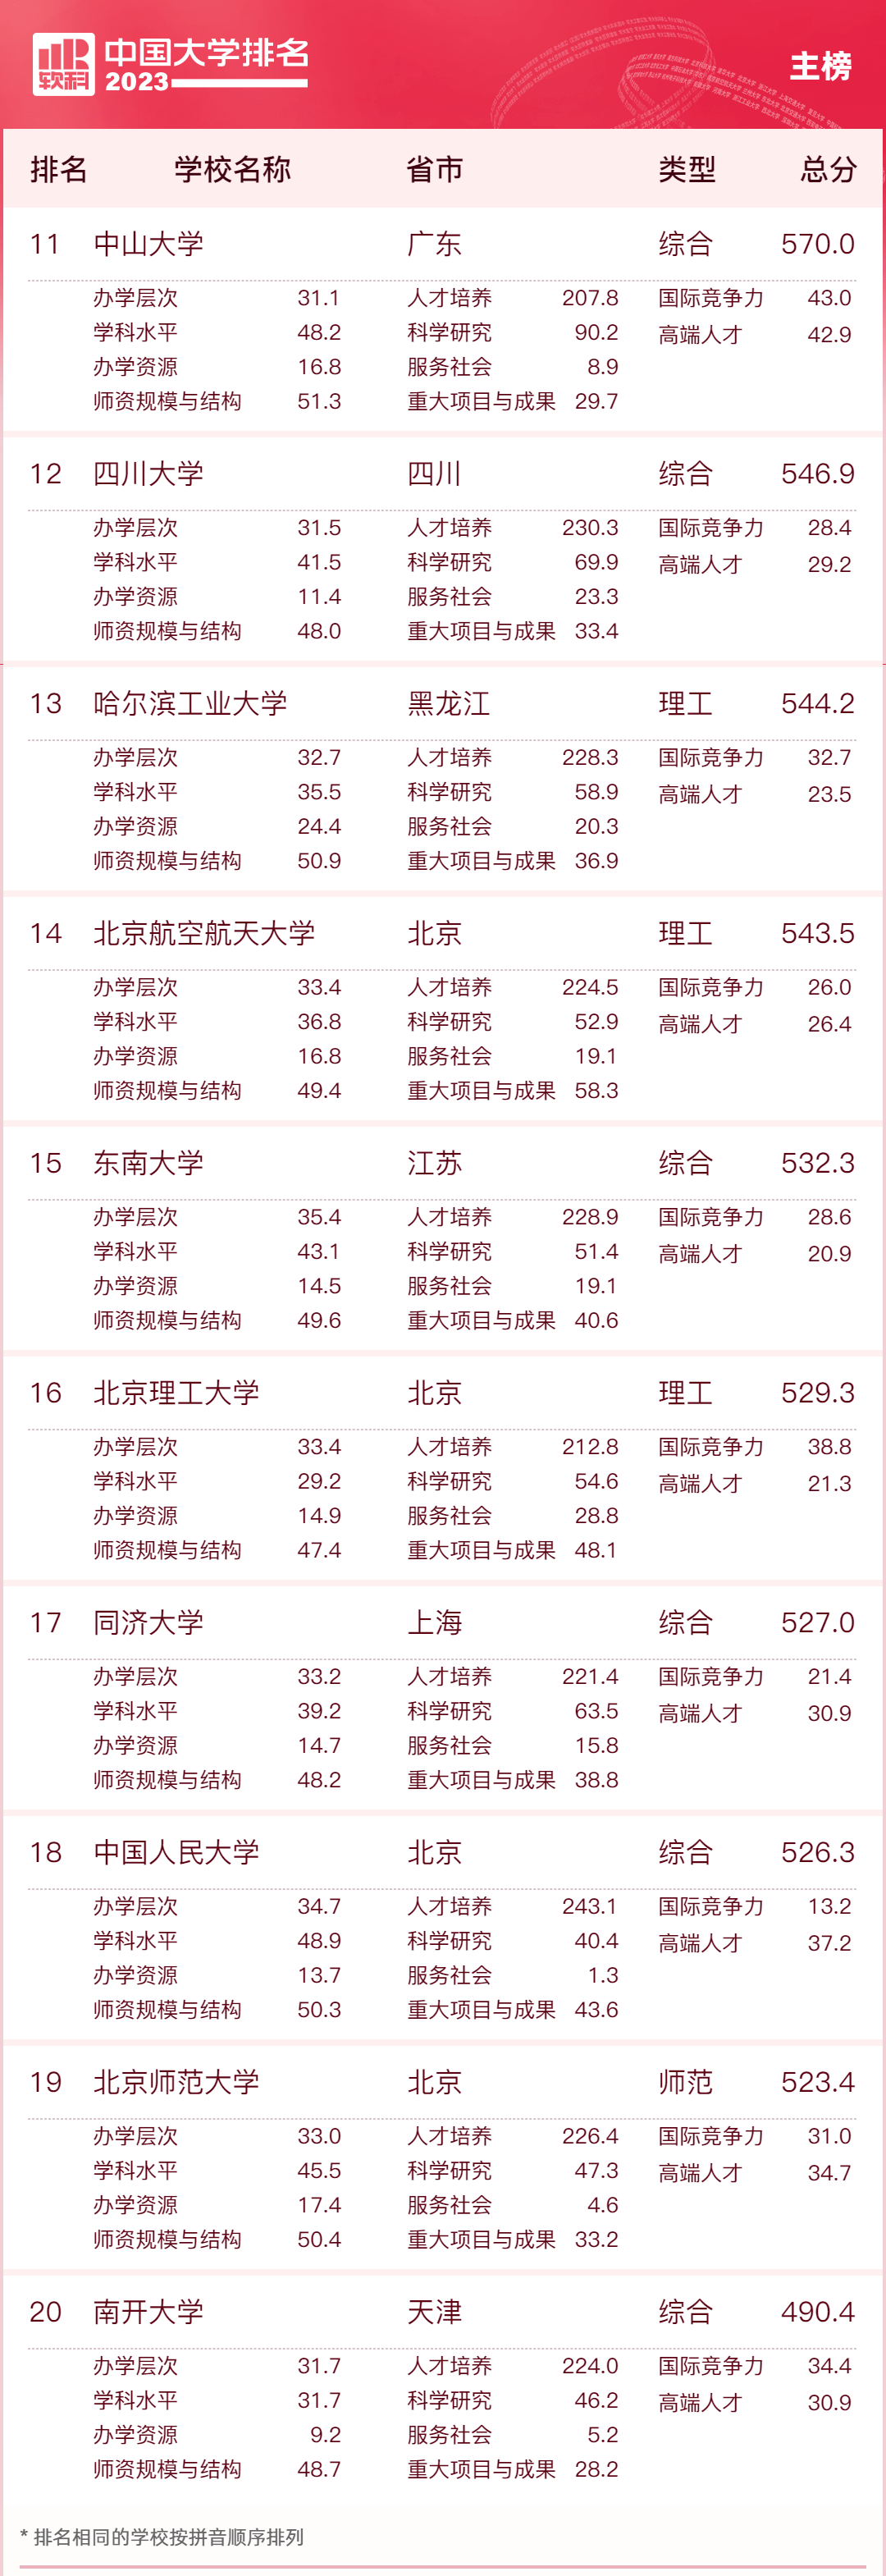 专业排行榜_重磅!2023中国大学专业排行榜公布!